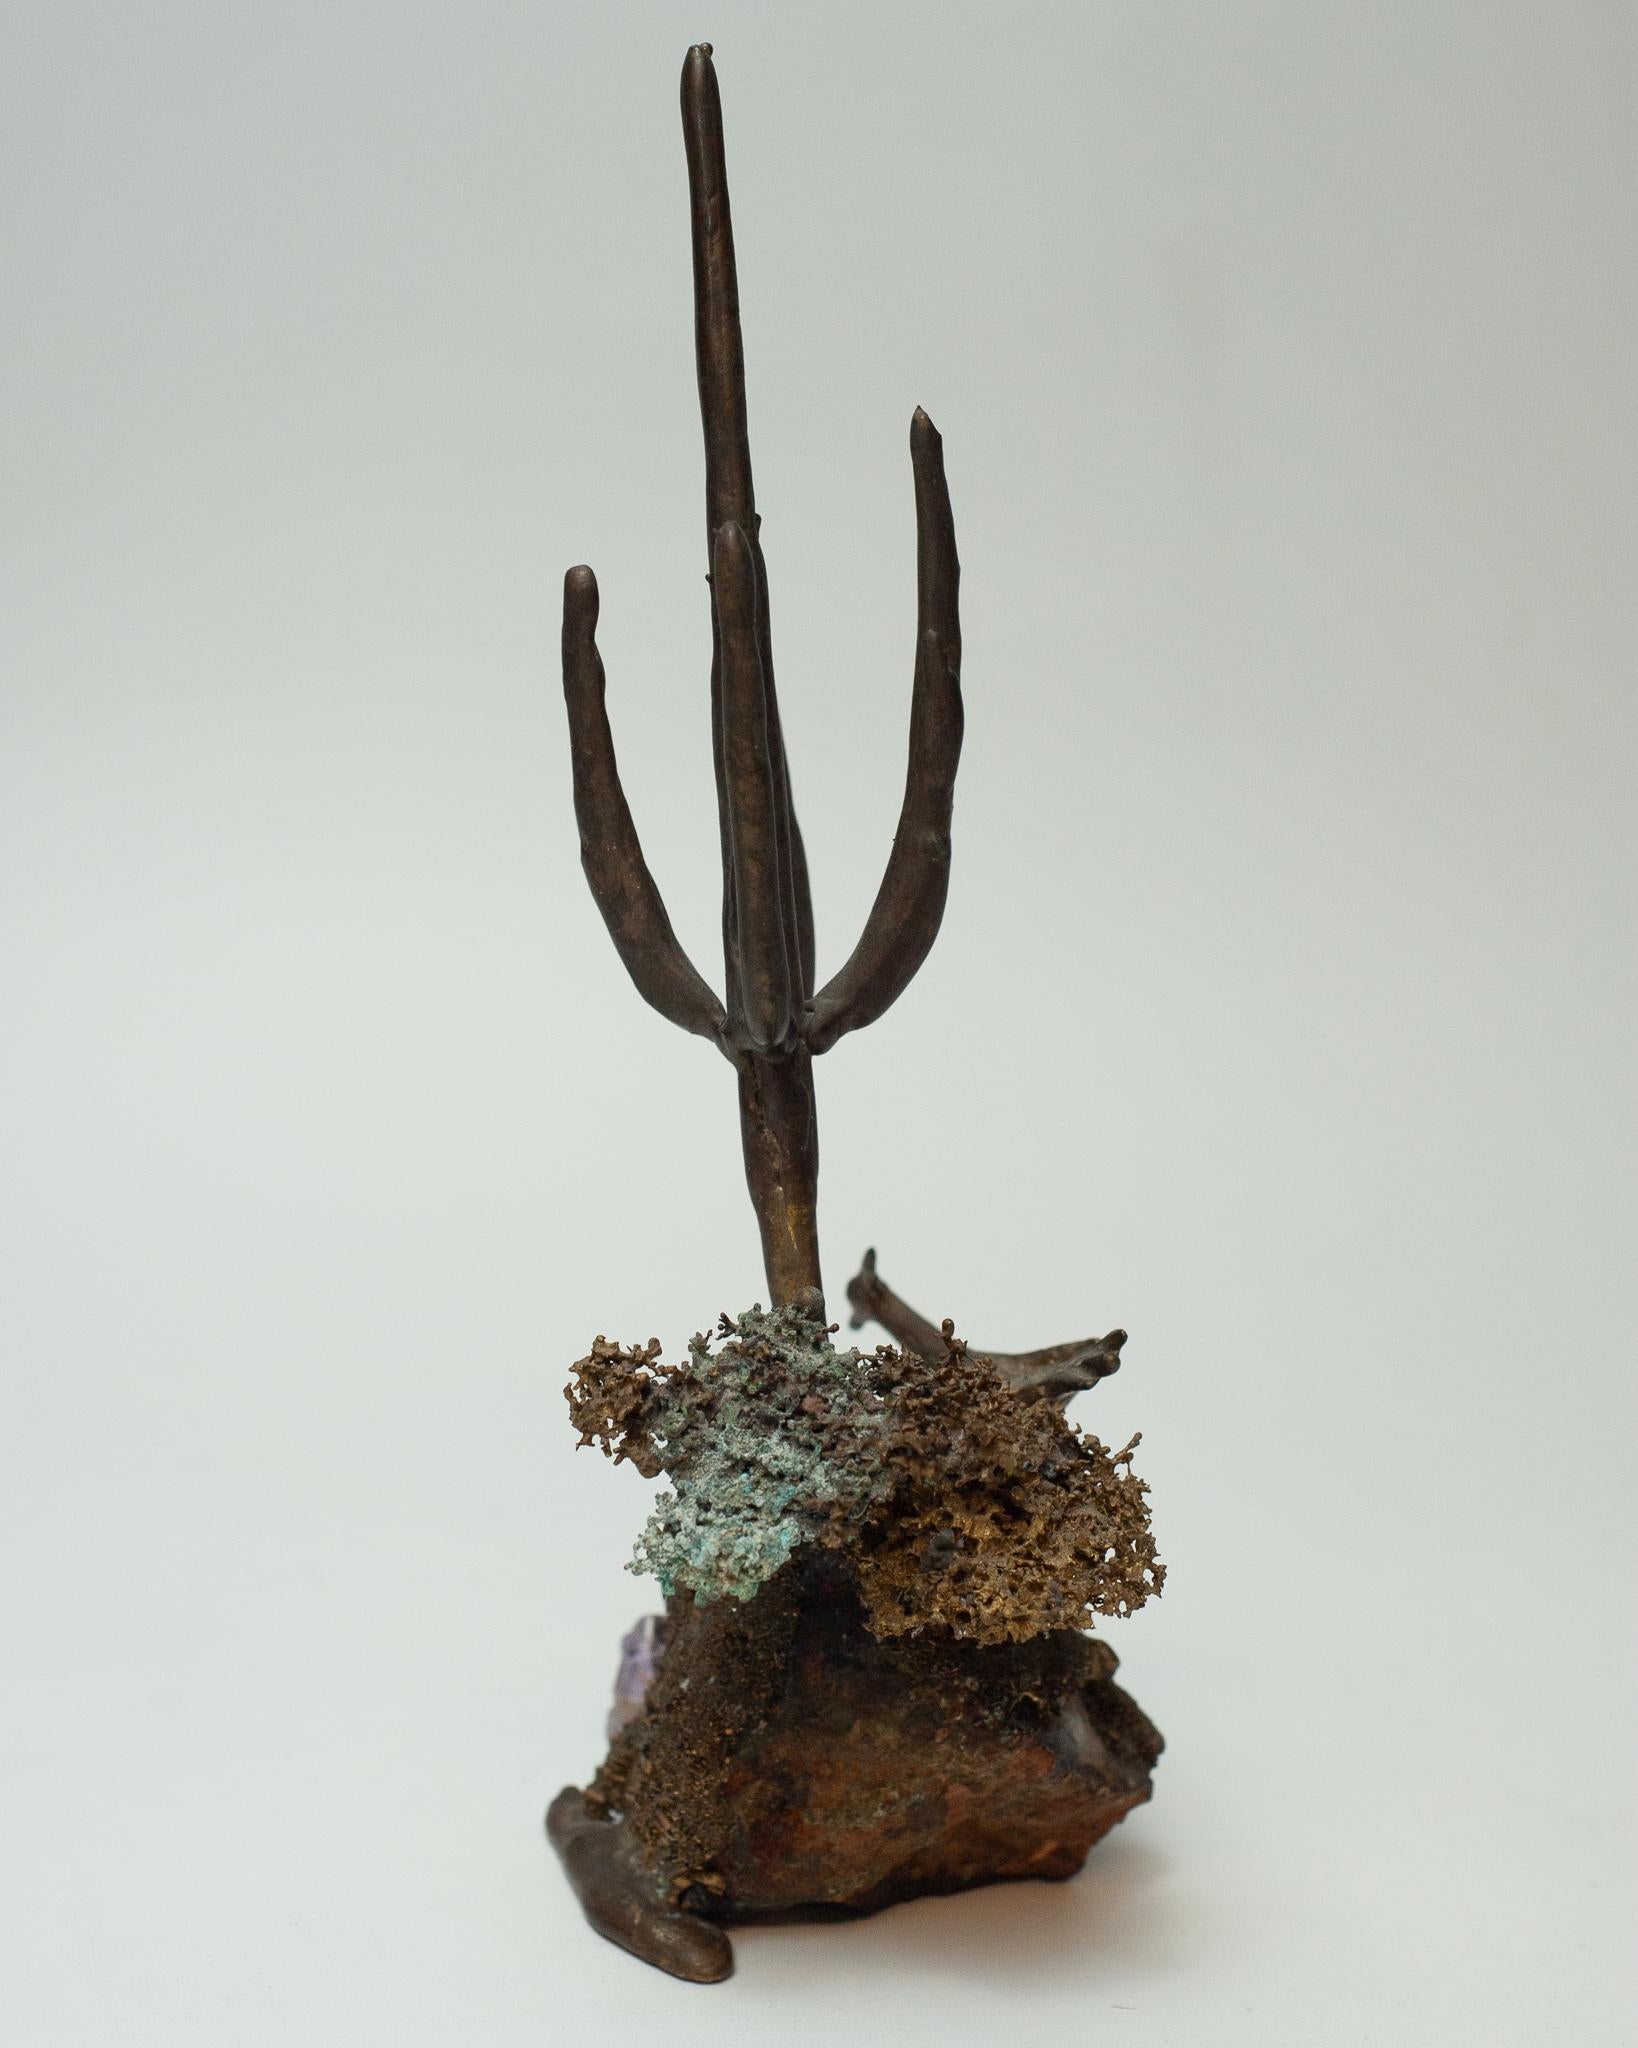 Une sculpture unique en bronze et améthyste dans un traitement de style véritablement Brutalist / organique avec une patine de surface fine et brute. Des motifs d'oiseaux, de brosses texturées et de cactus sont abstraits en bronze coulé sur un